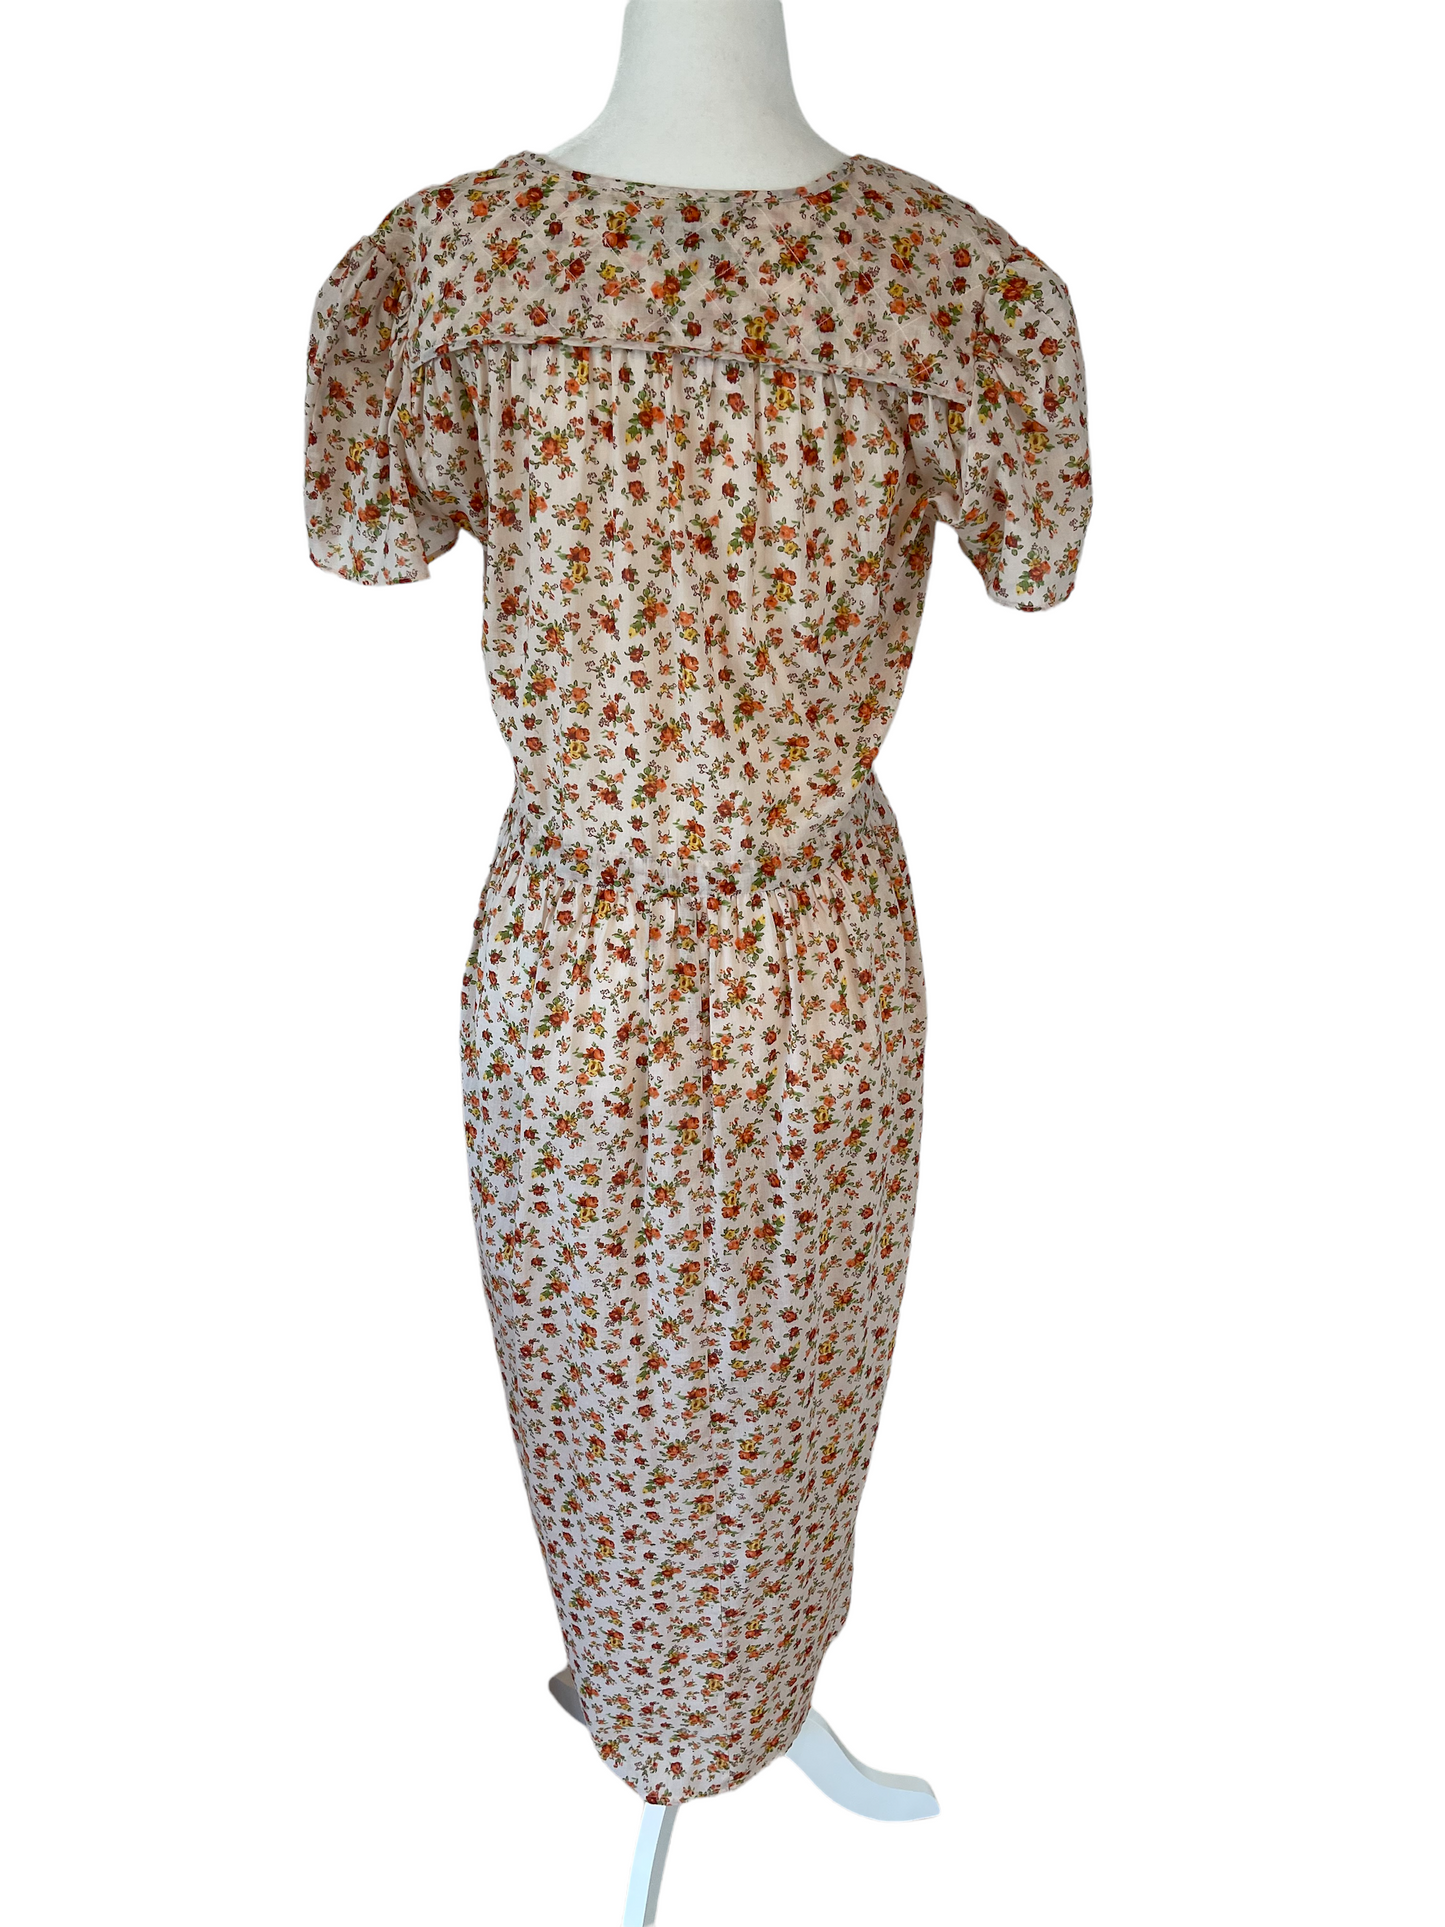 Peach & Cream Floral Dress - XS